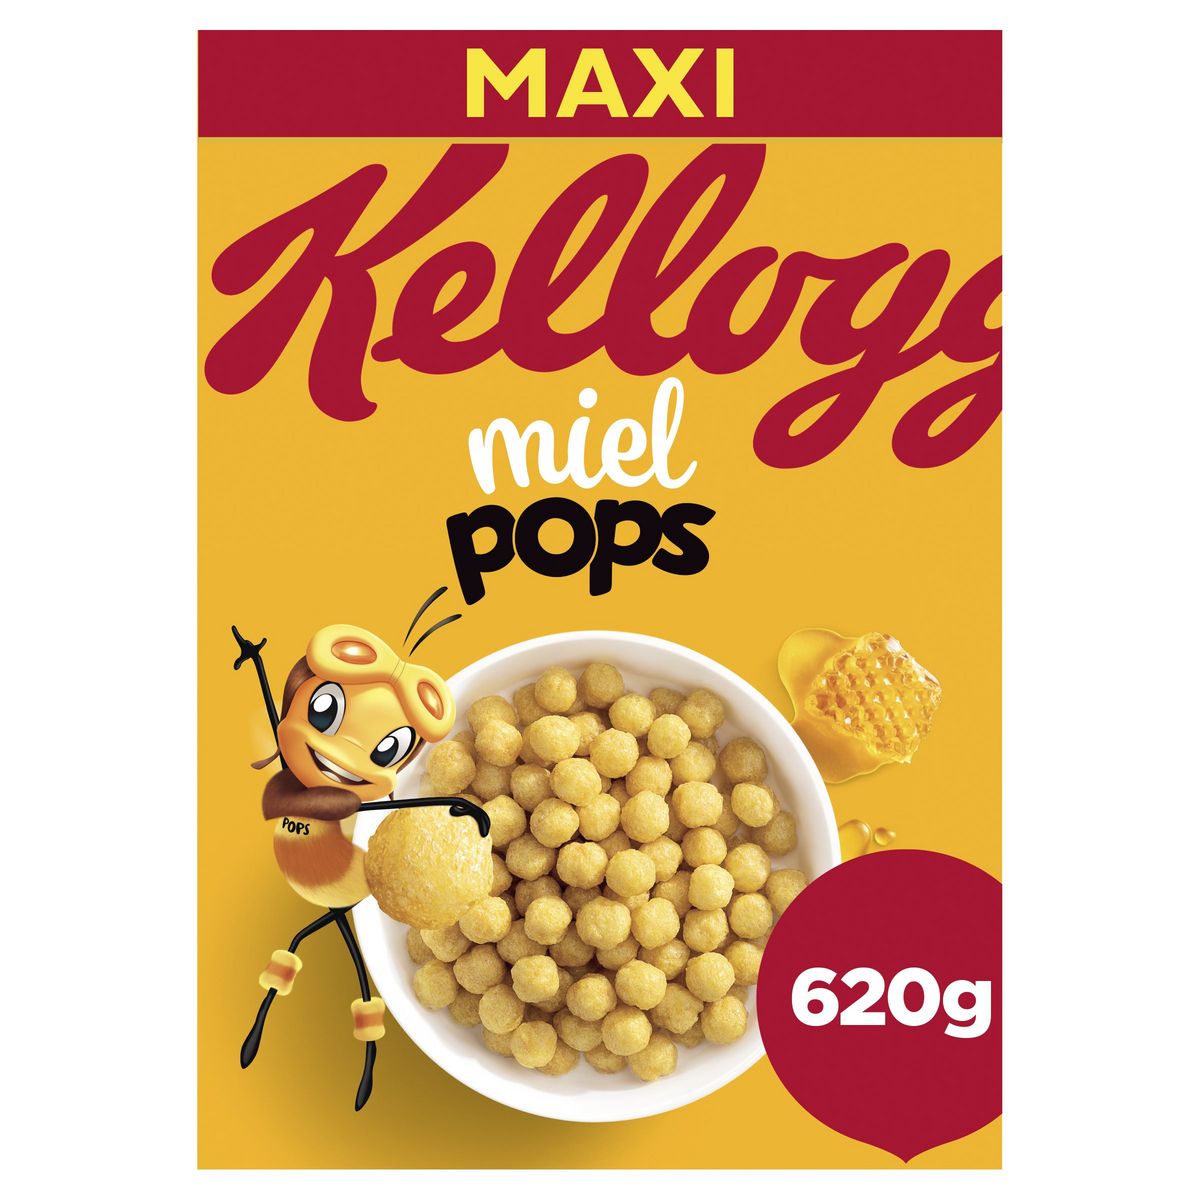 KELLOGG'S Miel pops Céréales au miel Maxi format 620g